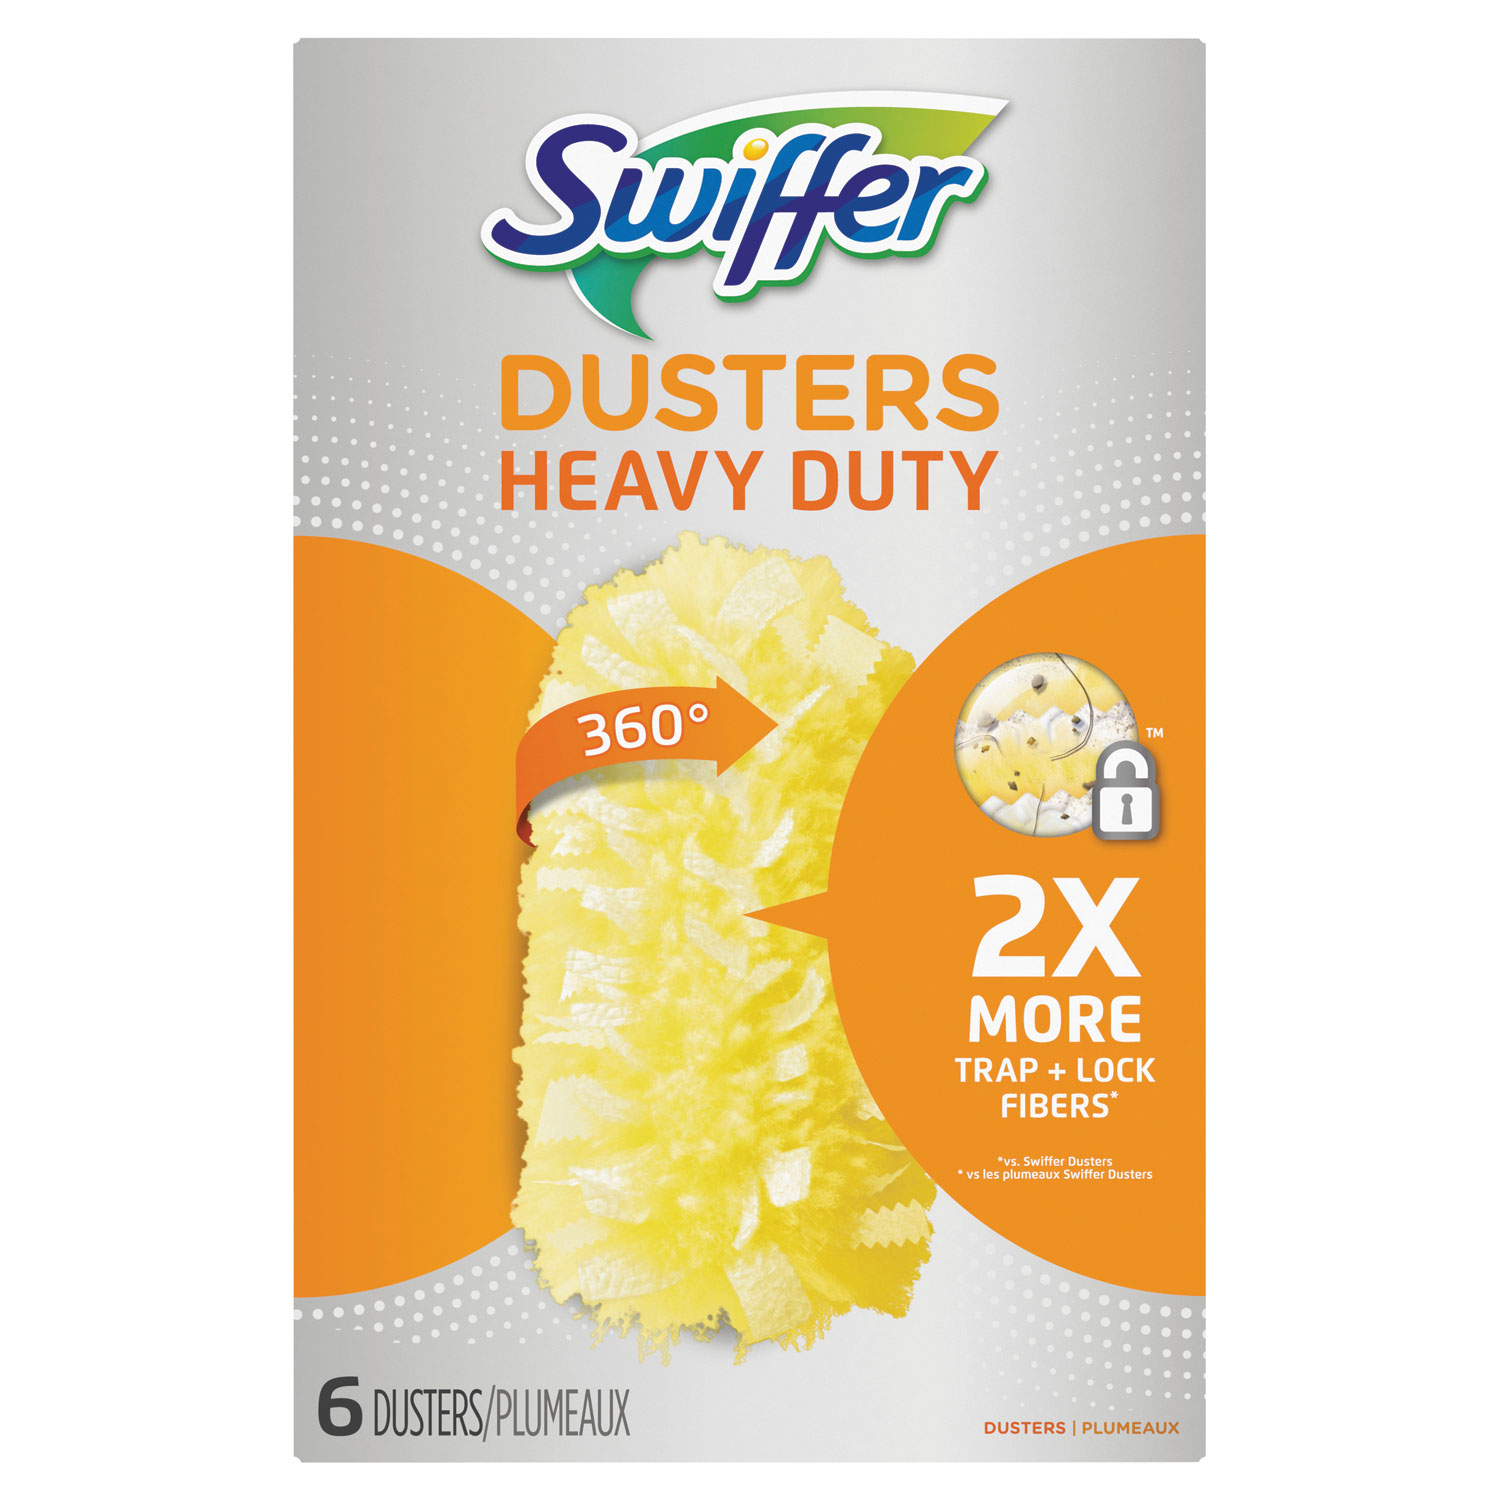 Swiffer Heavy Duty Dusters Refill - Dust Lock Fiber, Yellow, 24/Case